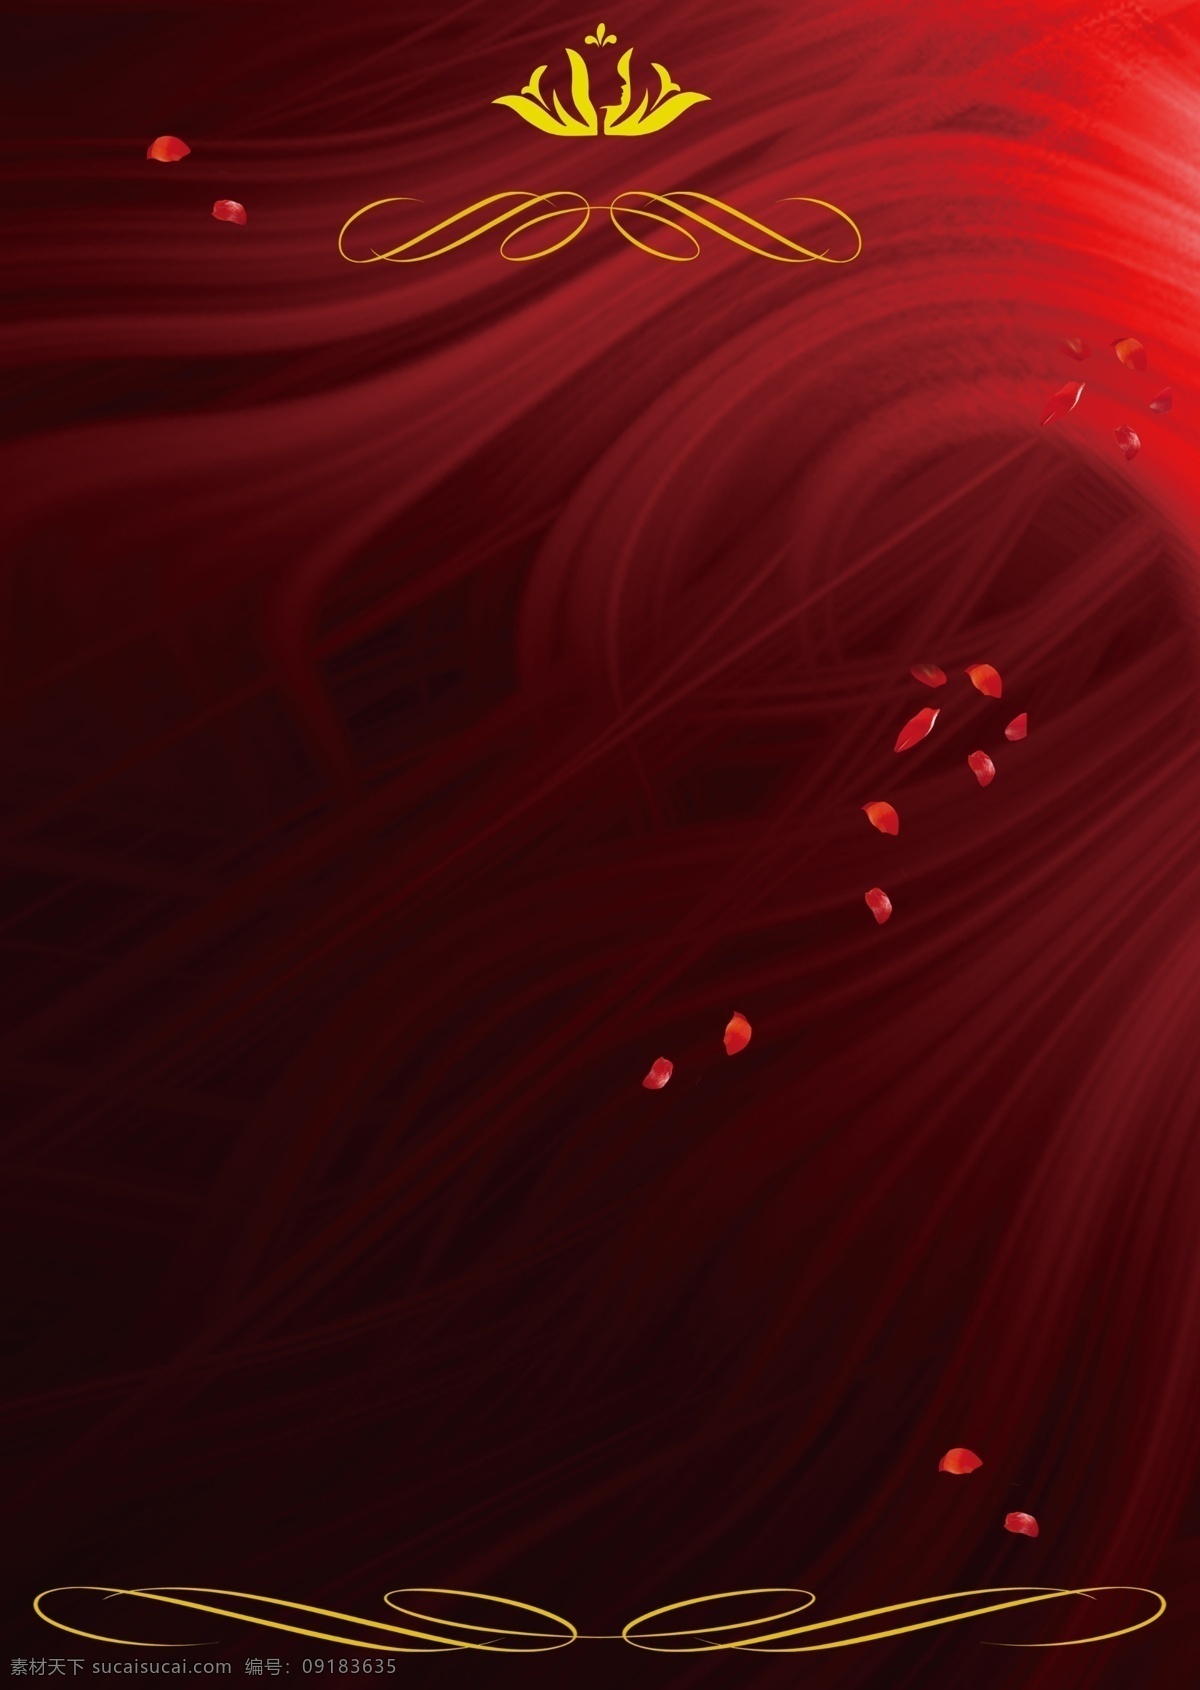 足疗背景图 红色背景 创意设计 花瓣背景 皇冠 宣传彩页